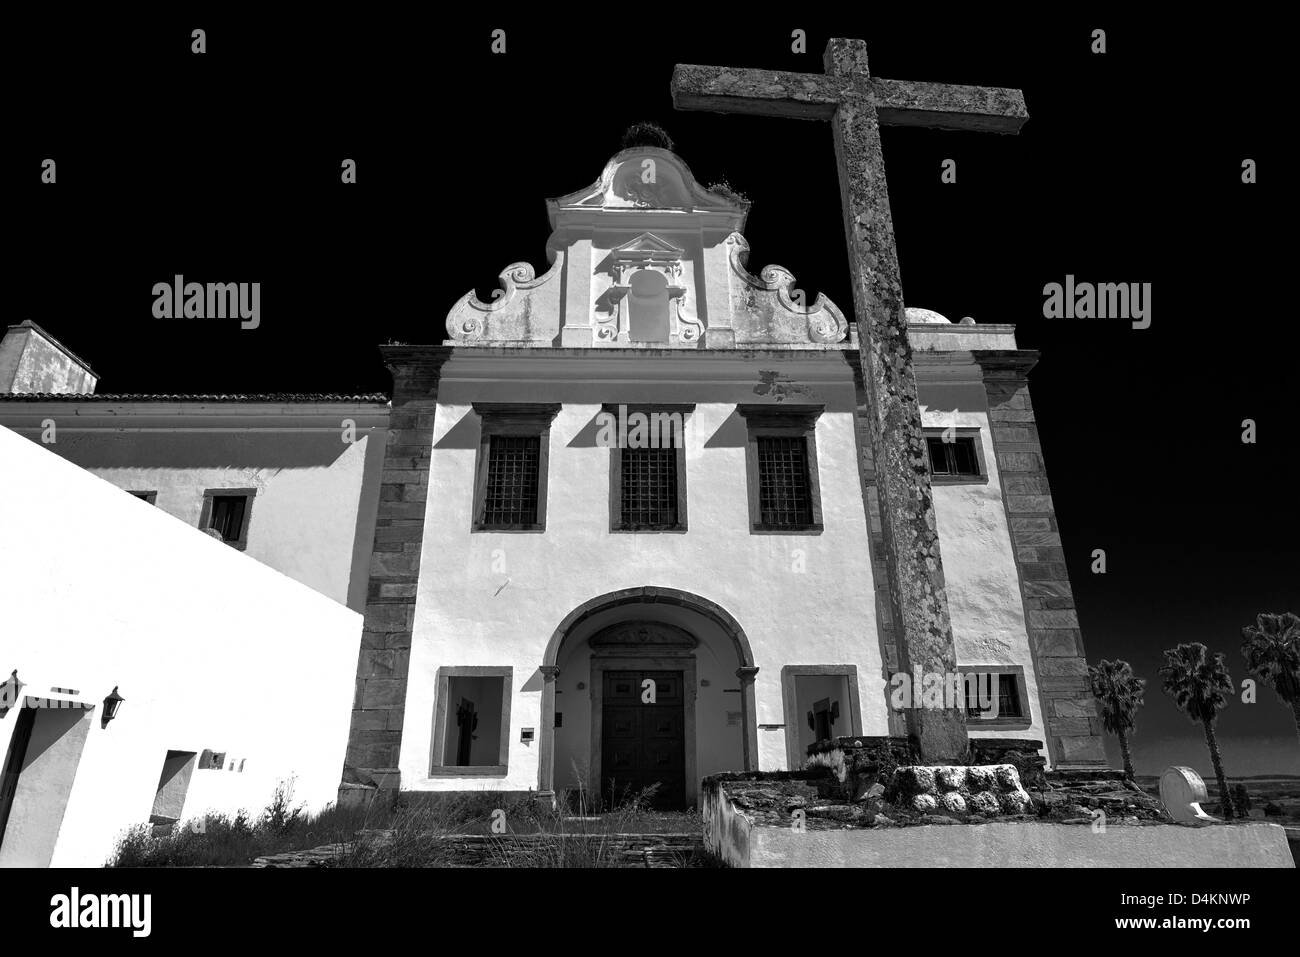 Le Portugal, l'Alentejo : version noir et blanc de l'ancien monastère Convento da Orada dans Monsaraz Banque D'Images